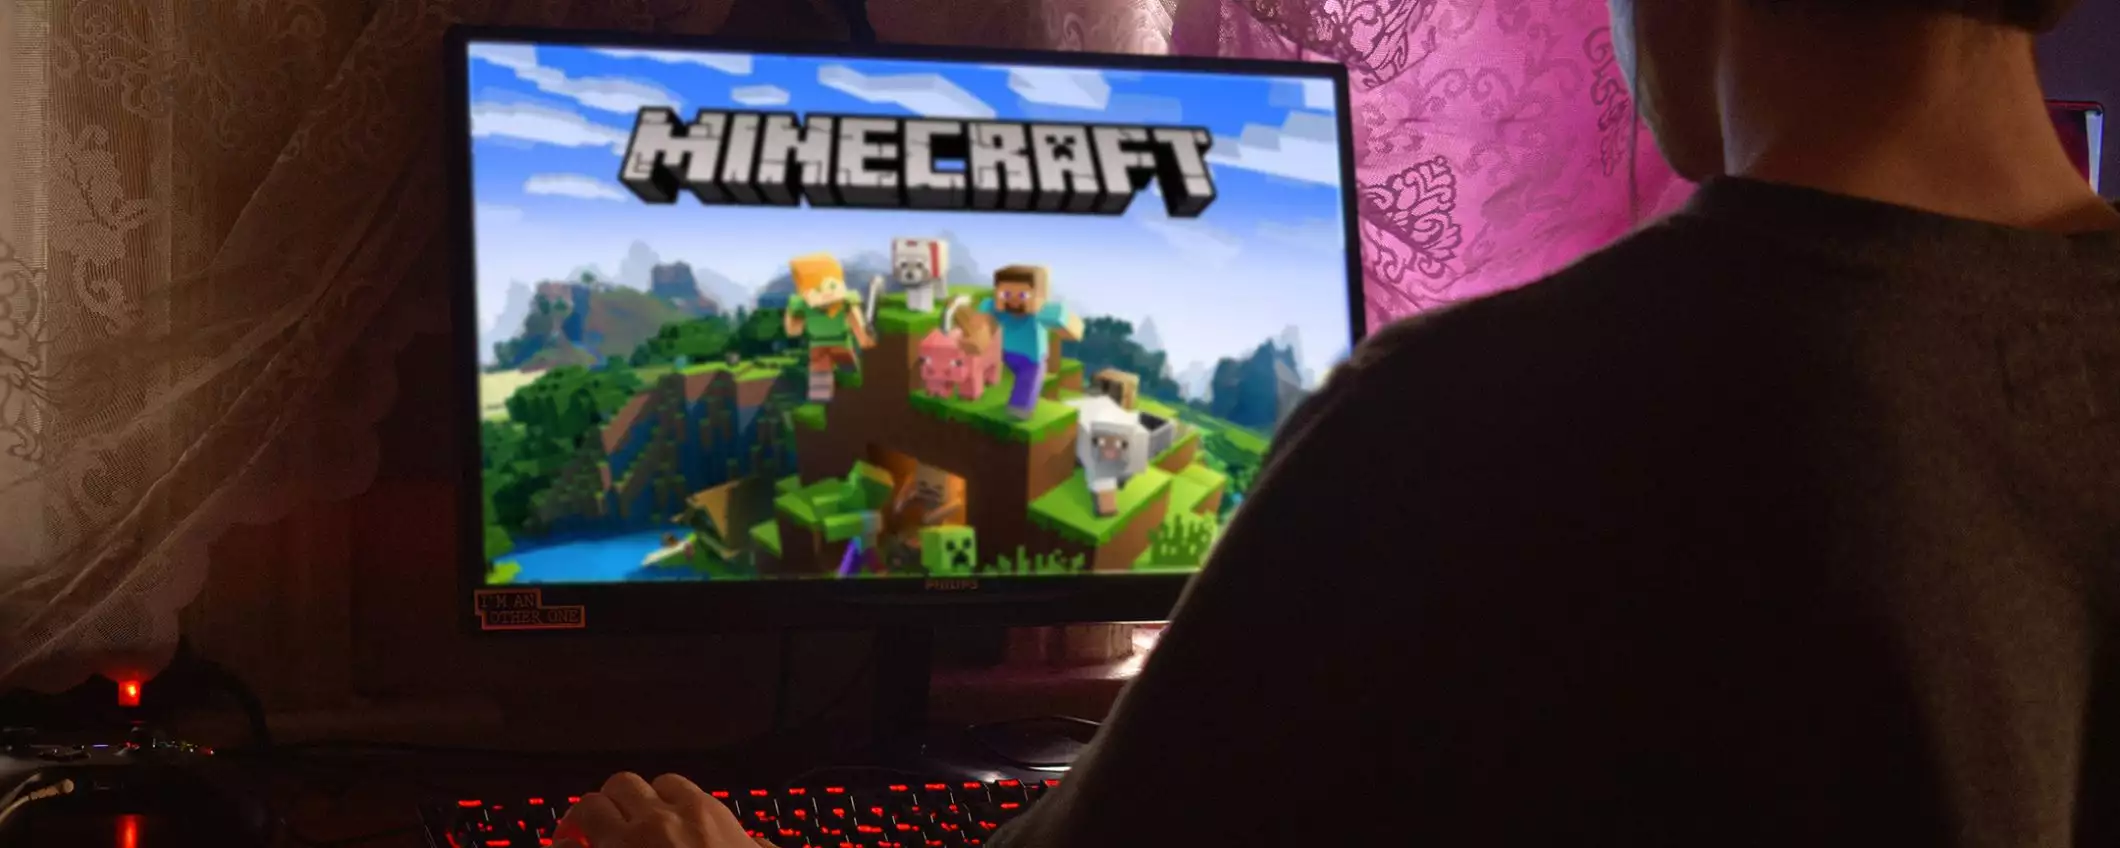 Falla di sicurezza su Minecraft: grosso rischio per i videogiocatori